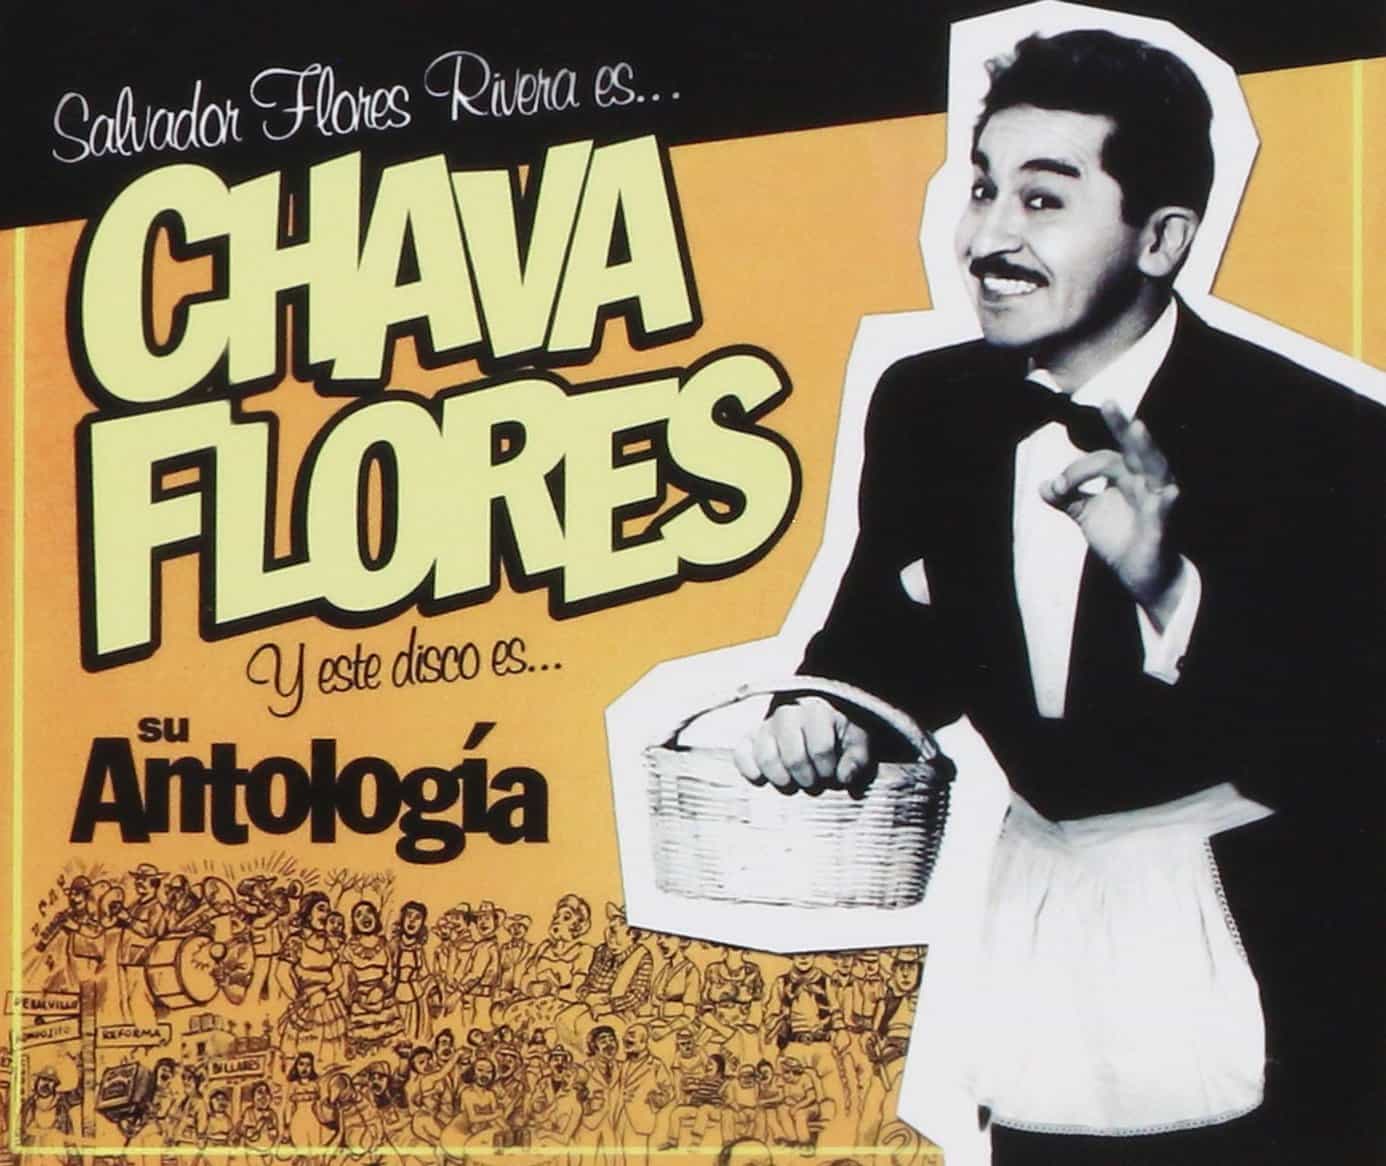 Salvador Flores Rivera, "Chava Flores", composer.